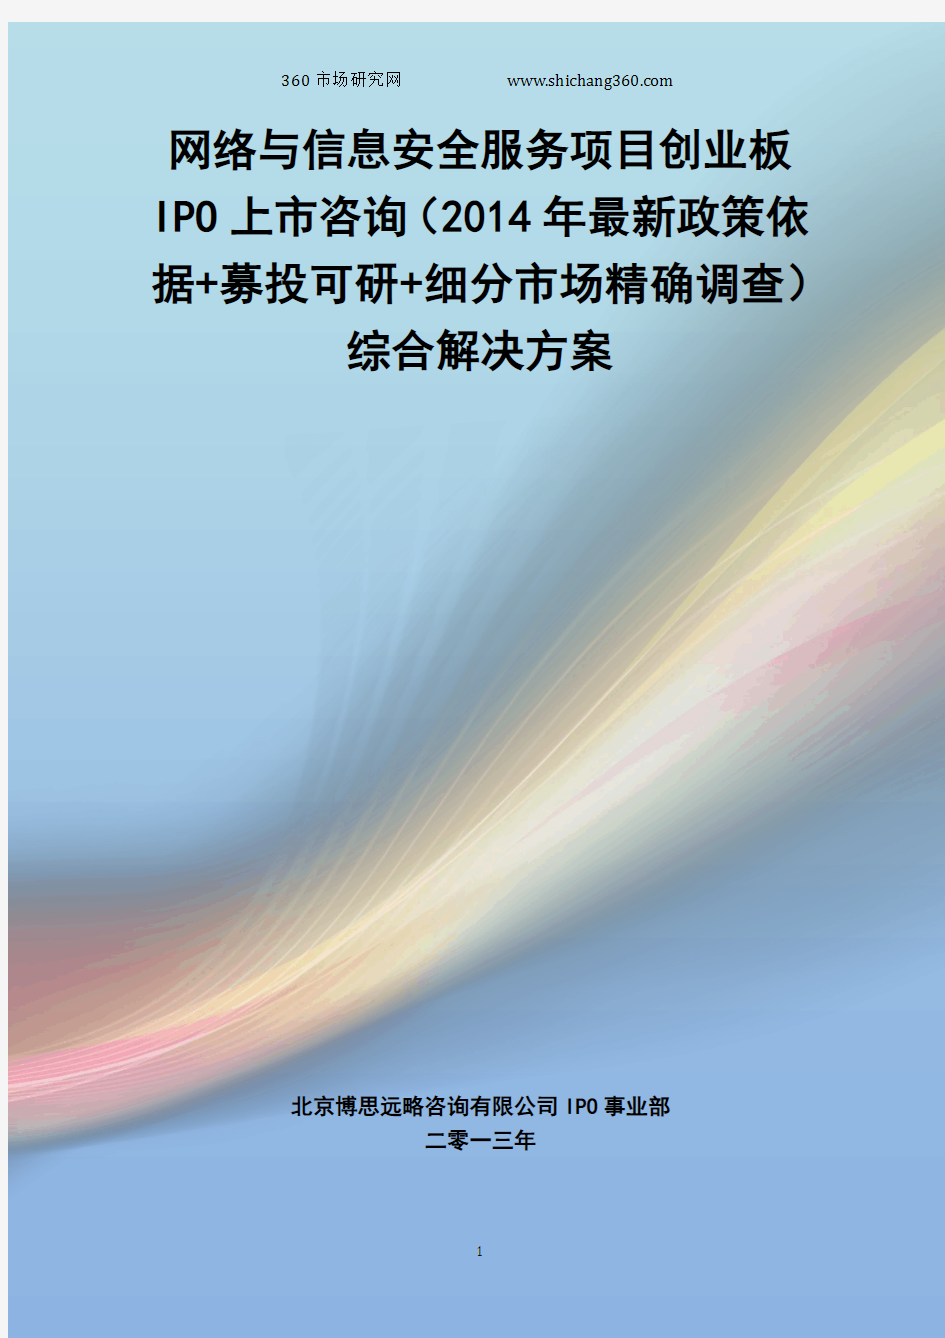 网络与信息安全服务IPO上市咨询(2014年最新政策+募投可研+细分市场调查)综合解决方案